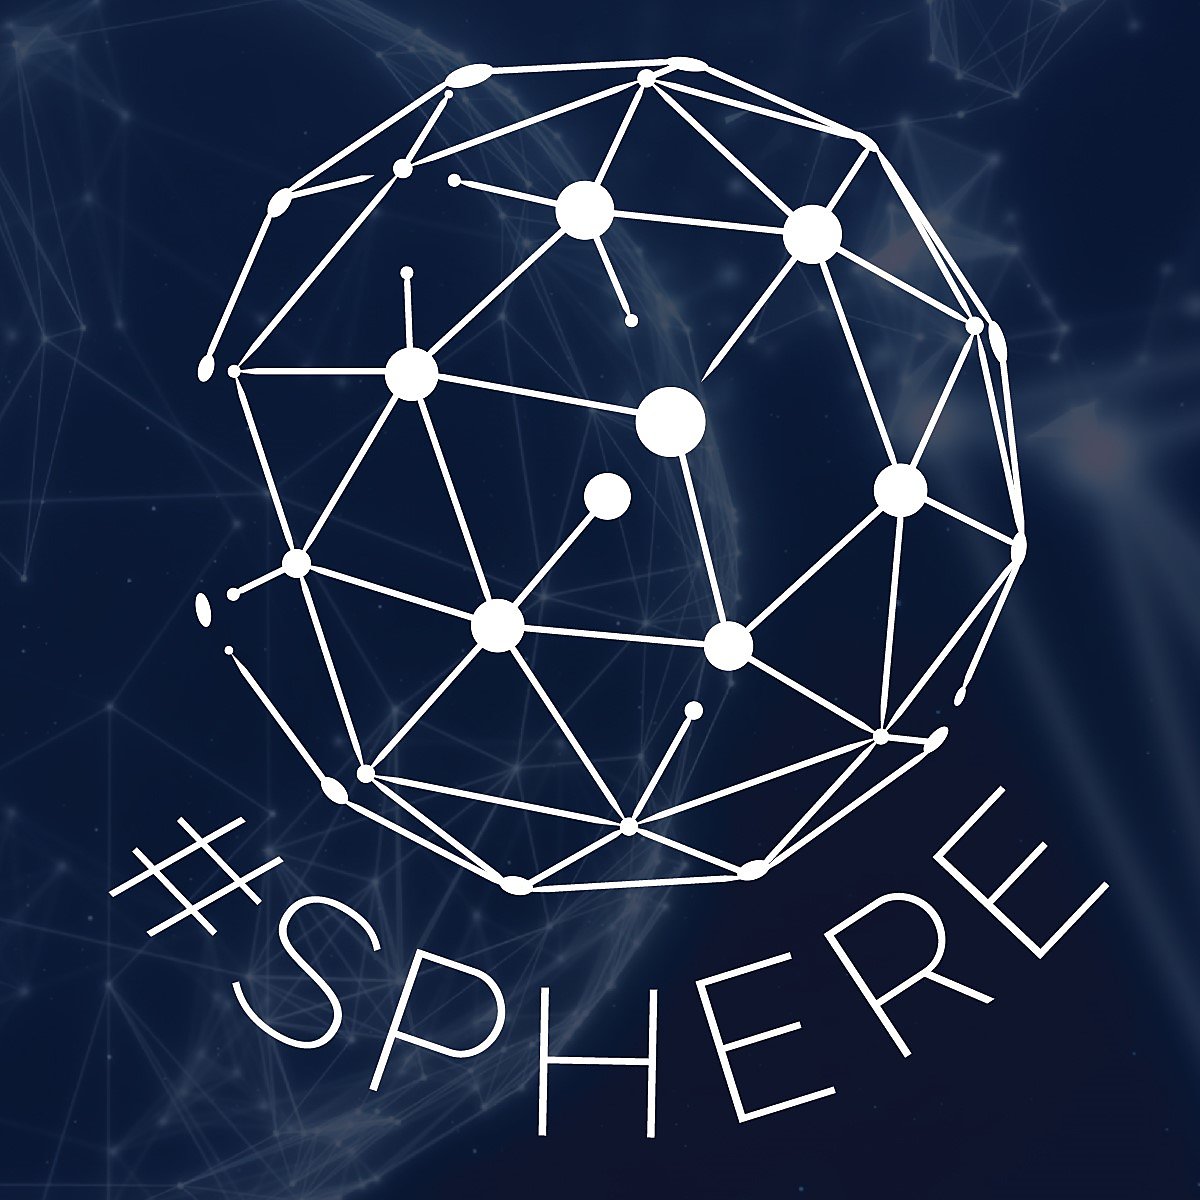 #sphere